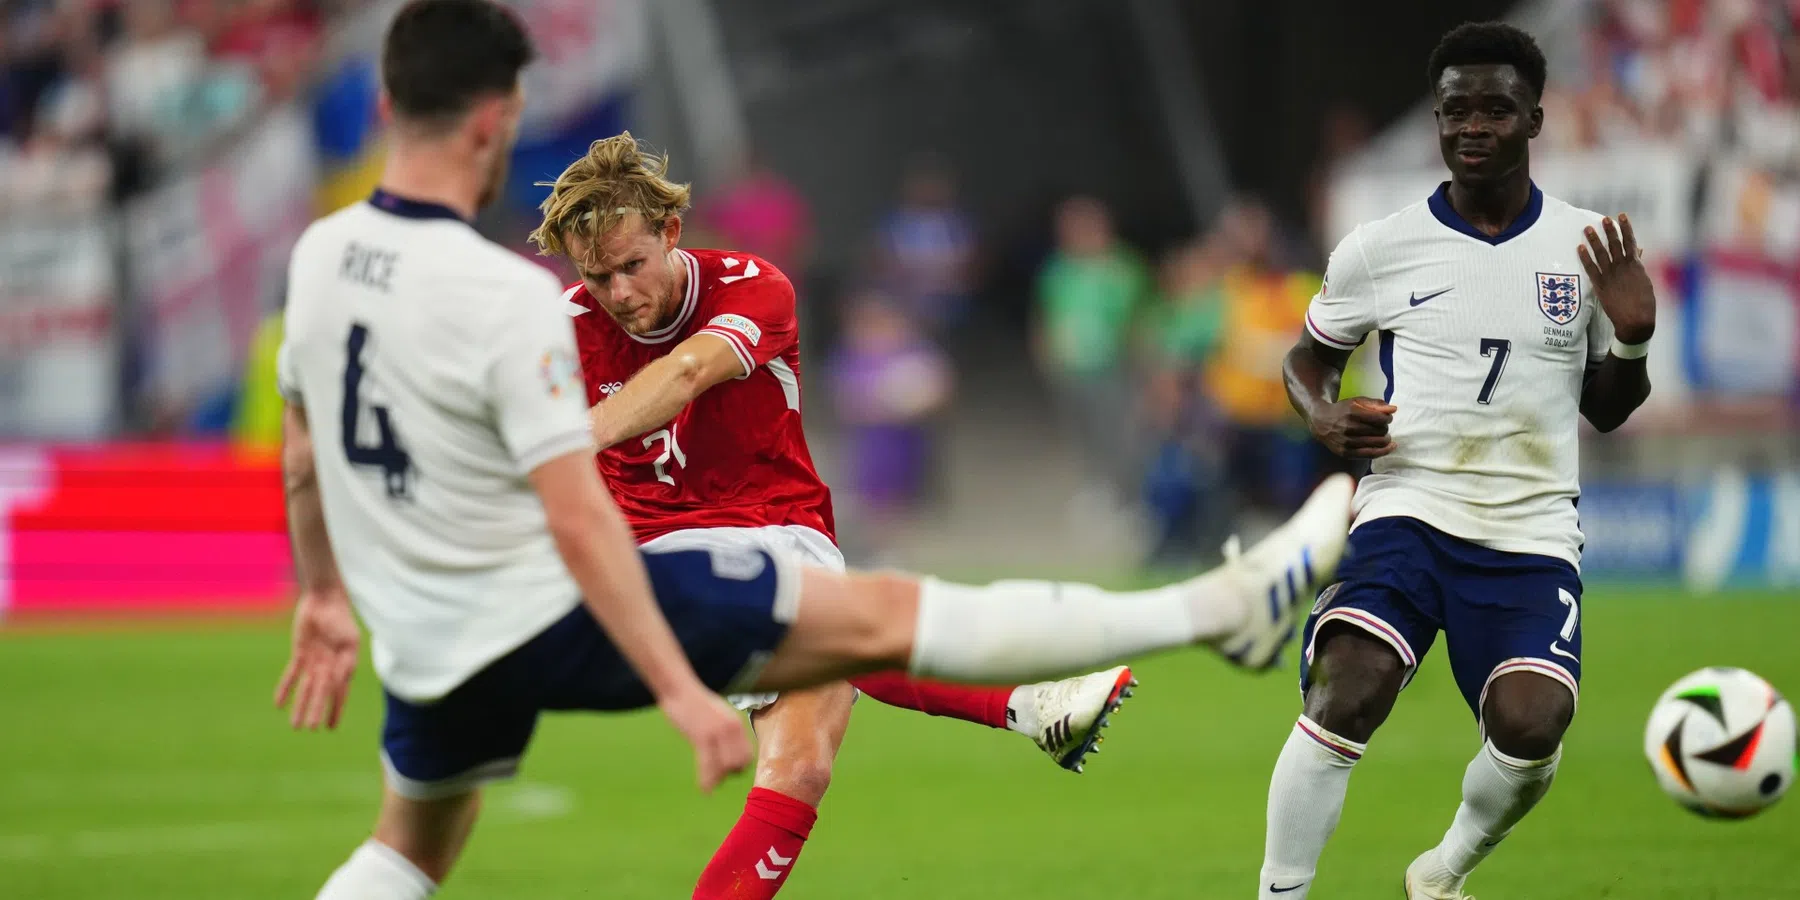 Engeland en Denemarken delen de punten na boeiend voetbalgevecht 